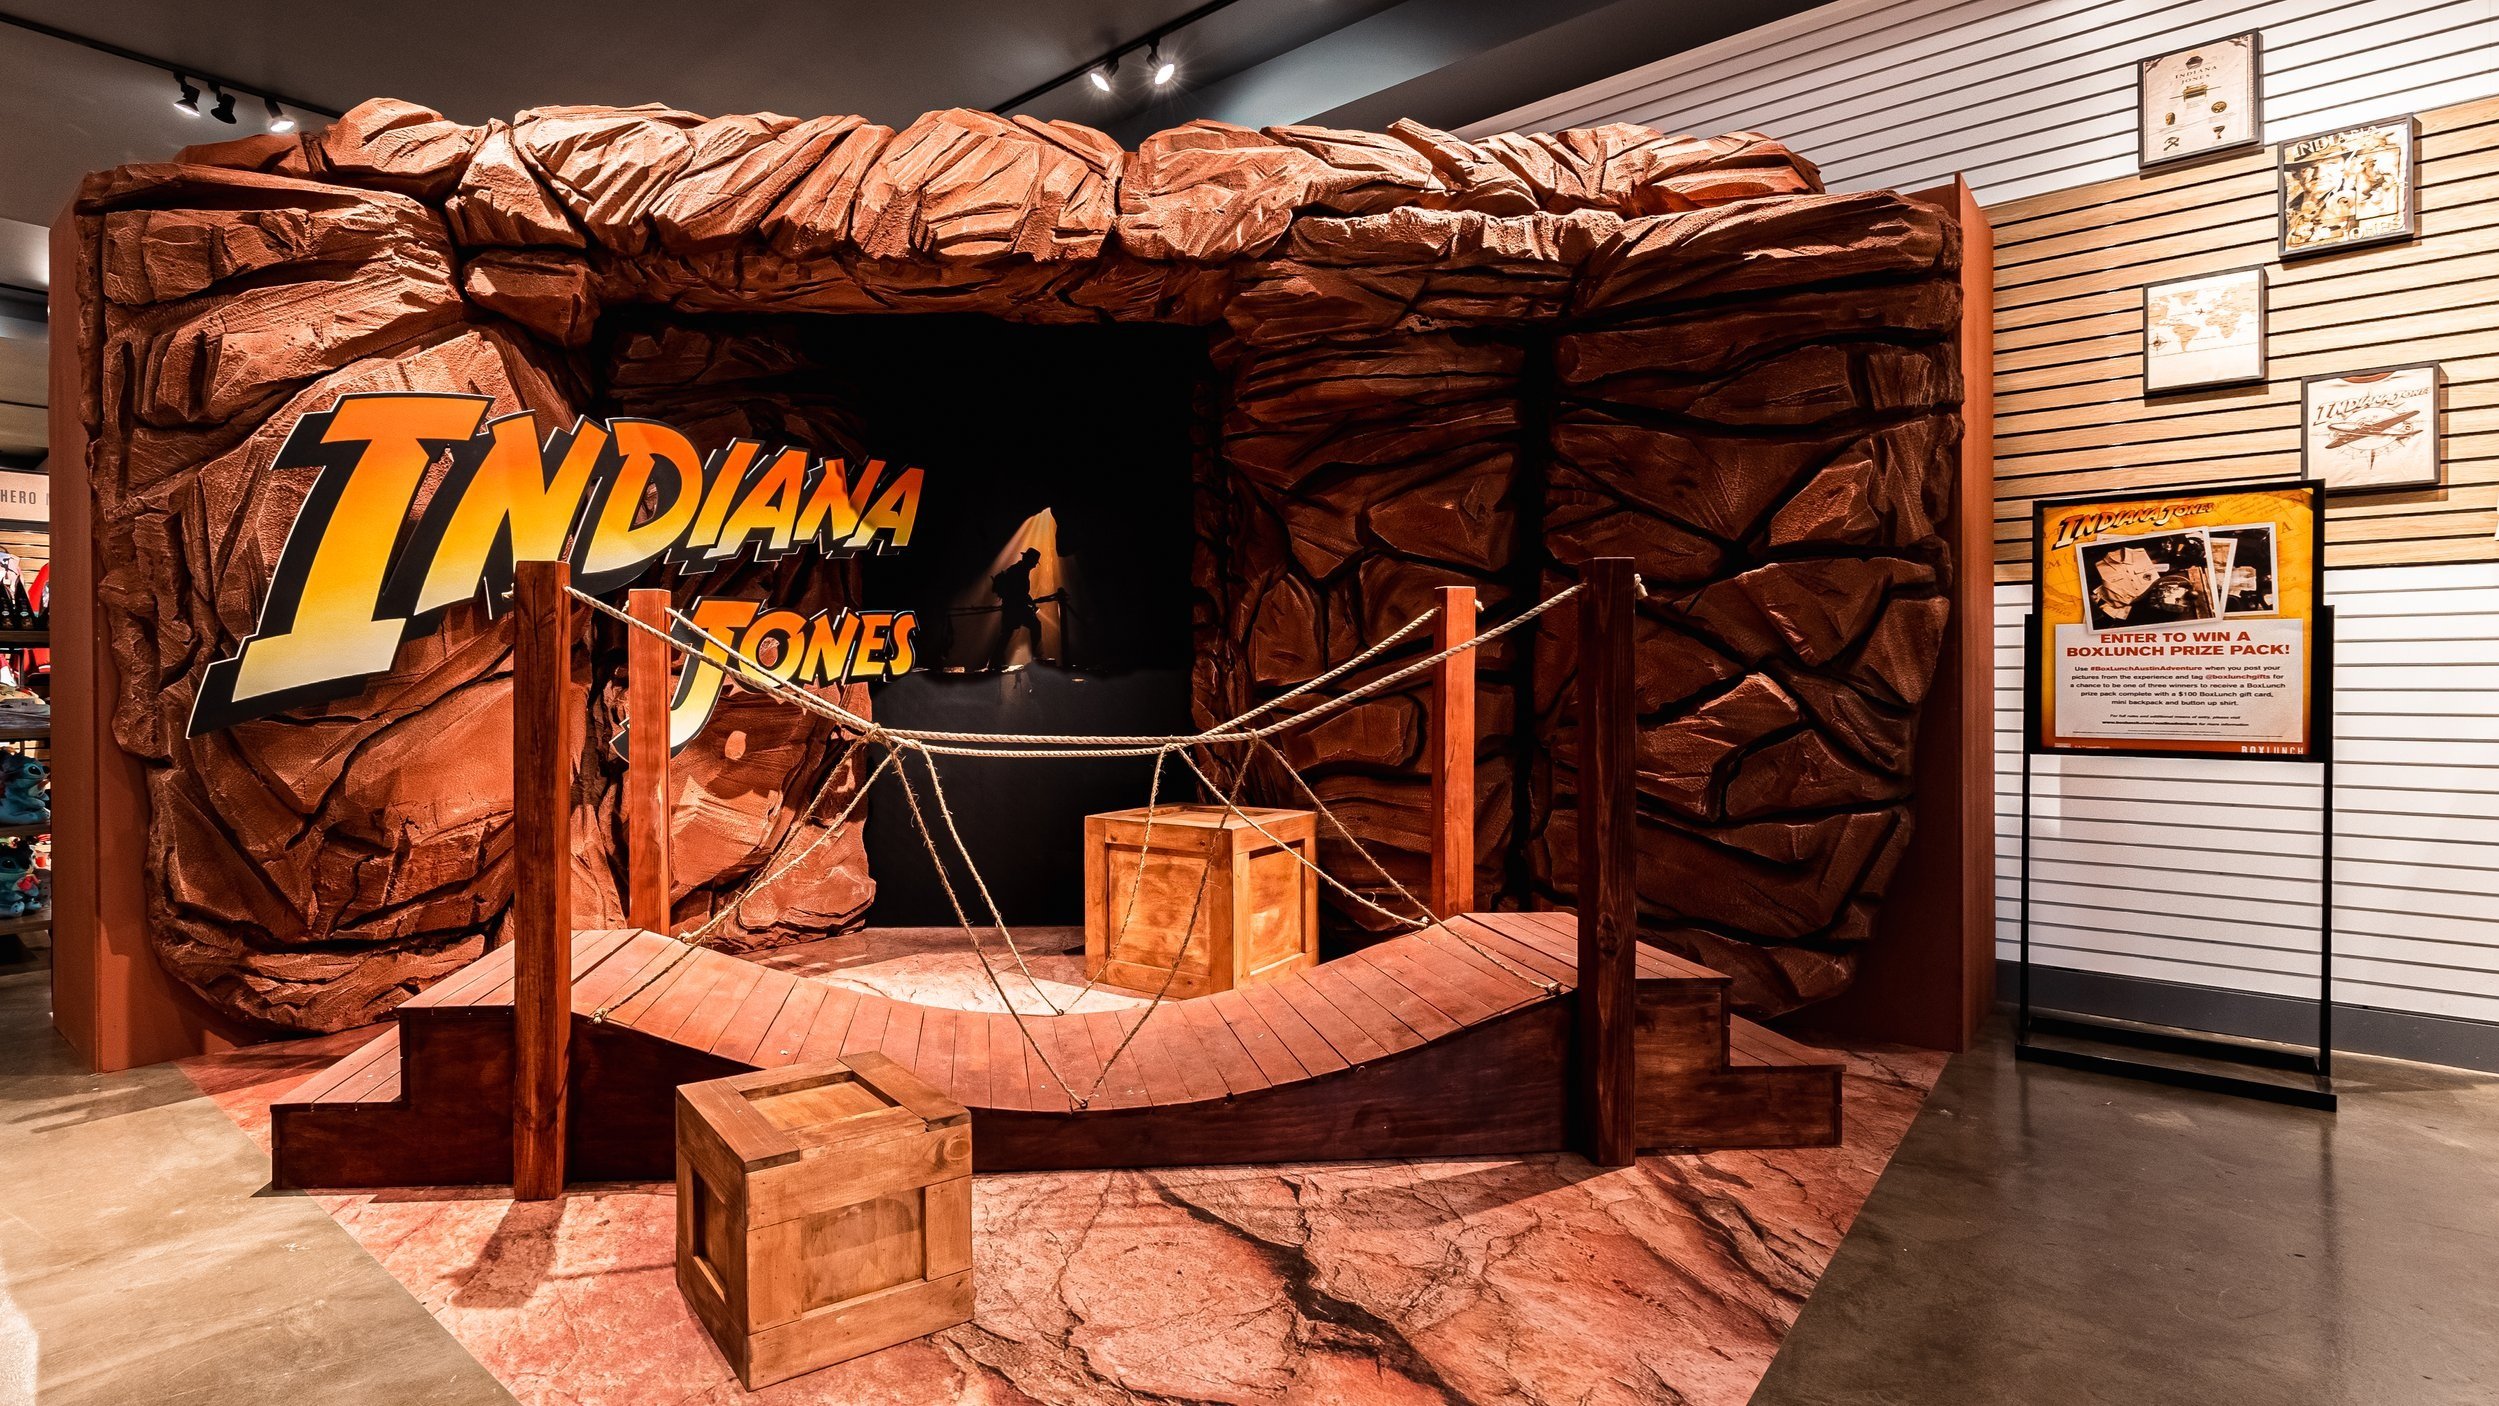 The Indiana Jones Store – THE INDIANA JONES STORE